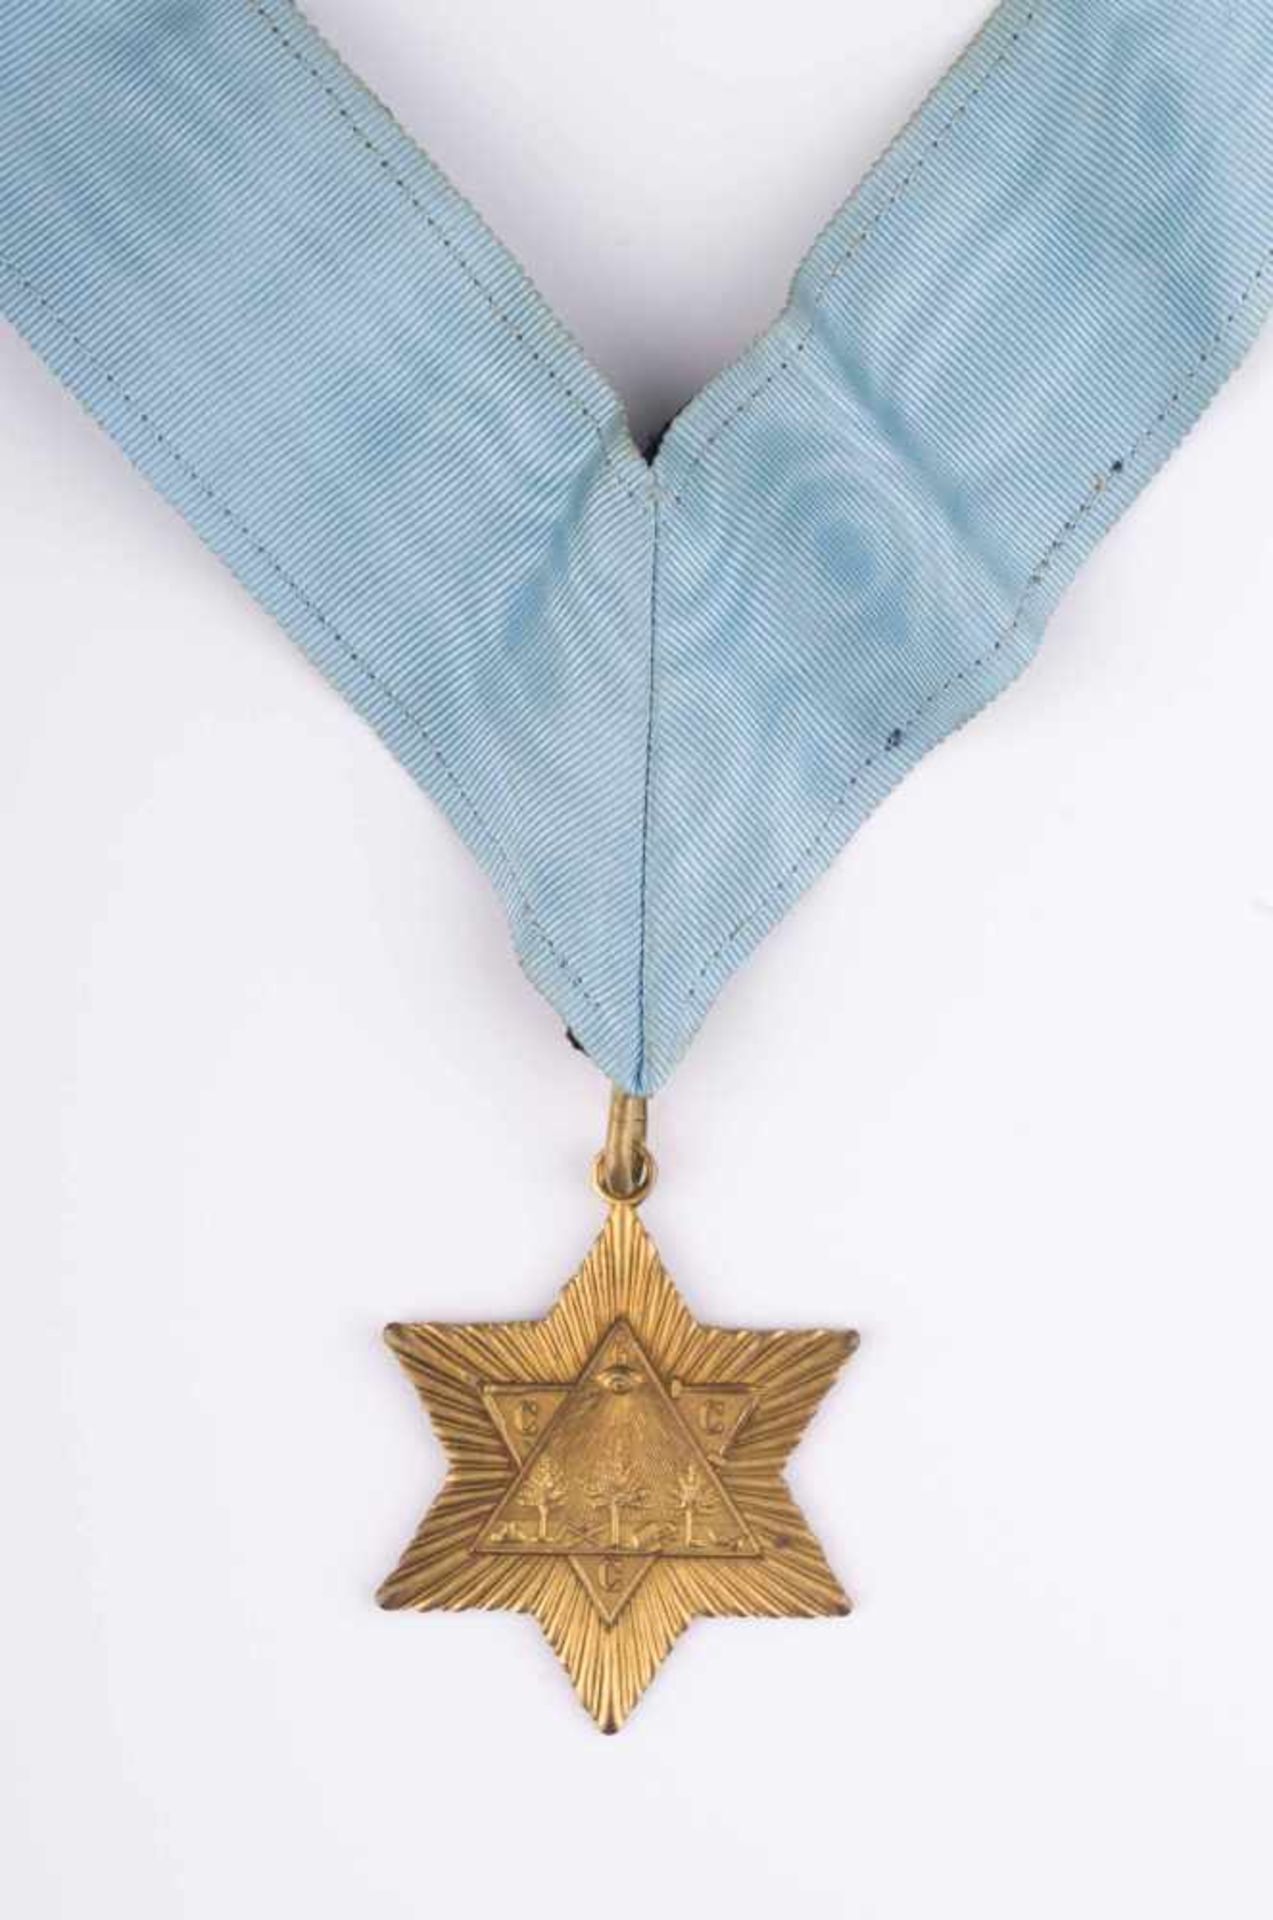 Freimaurer Orden/Anhänger / Freemason medal/pendant auf dem Orden das allsehende Auge, rückseitig